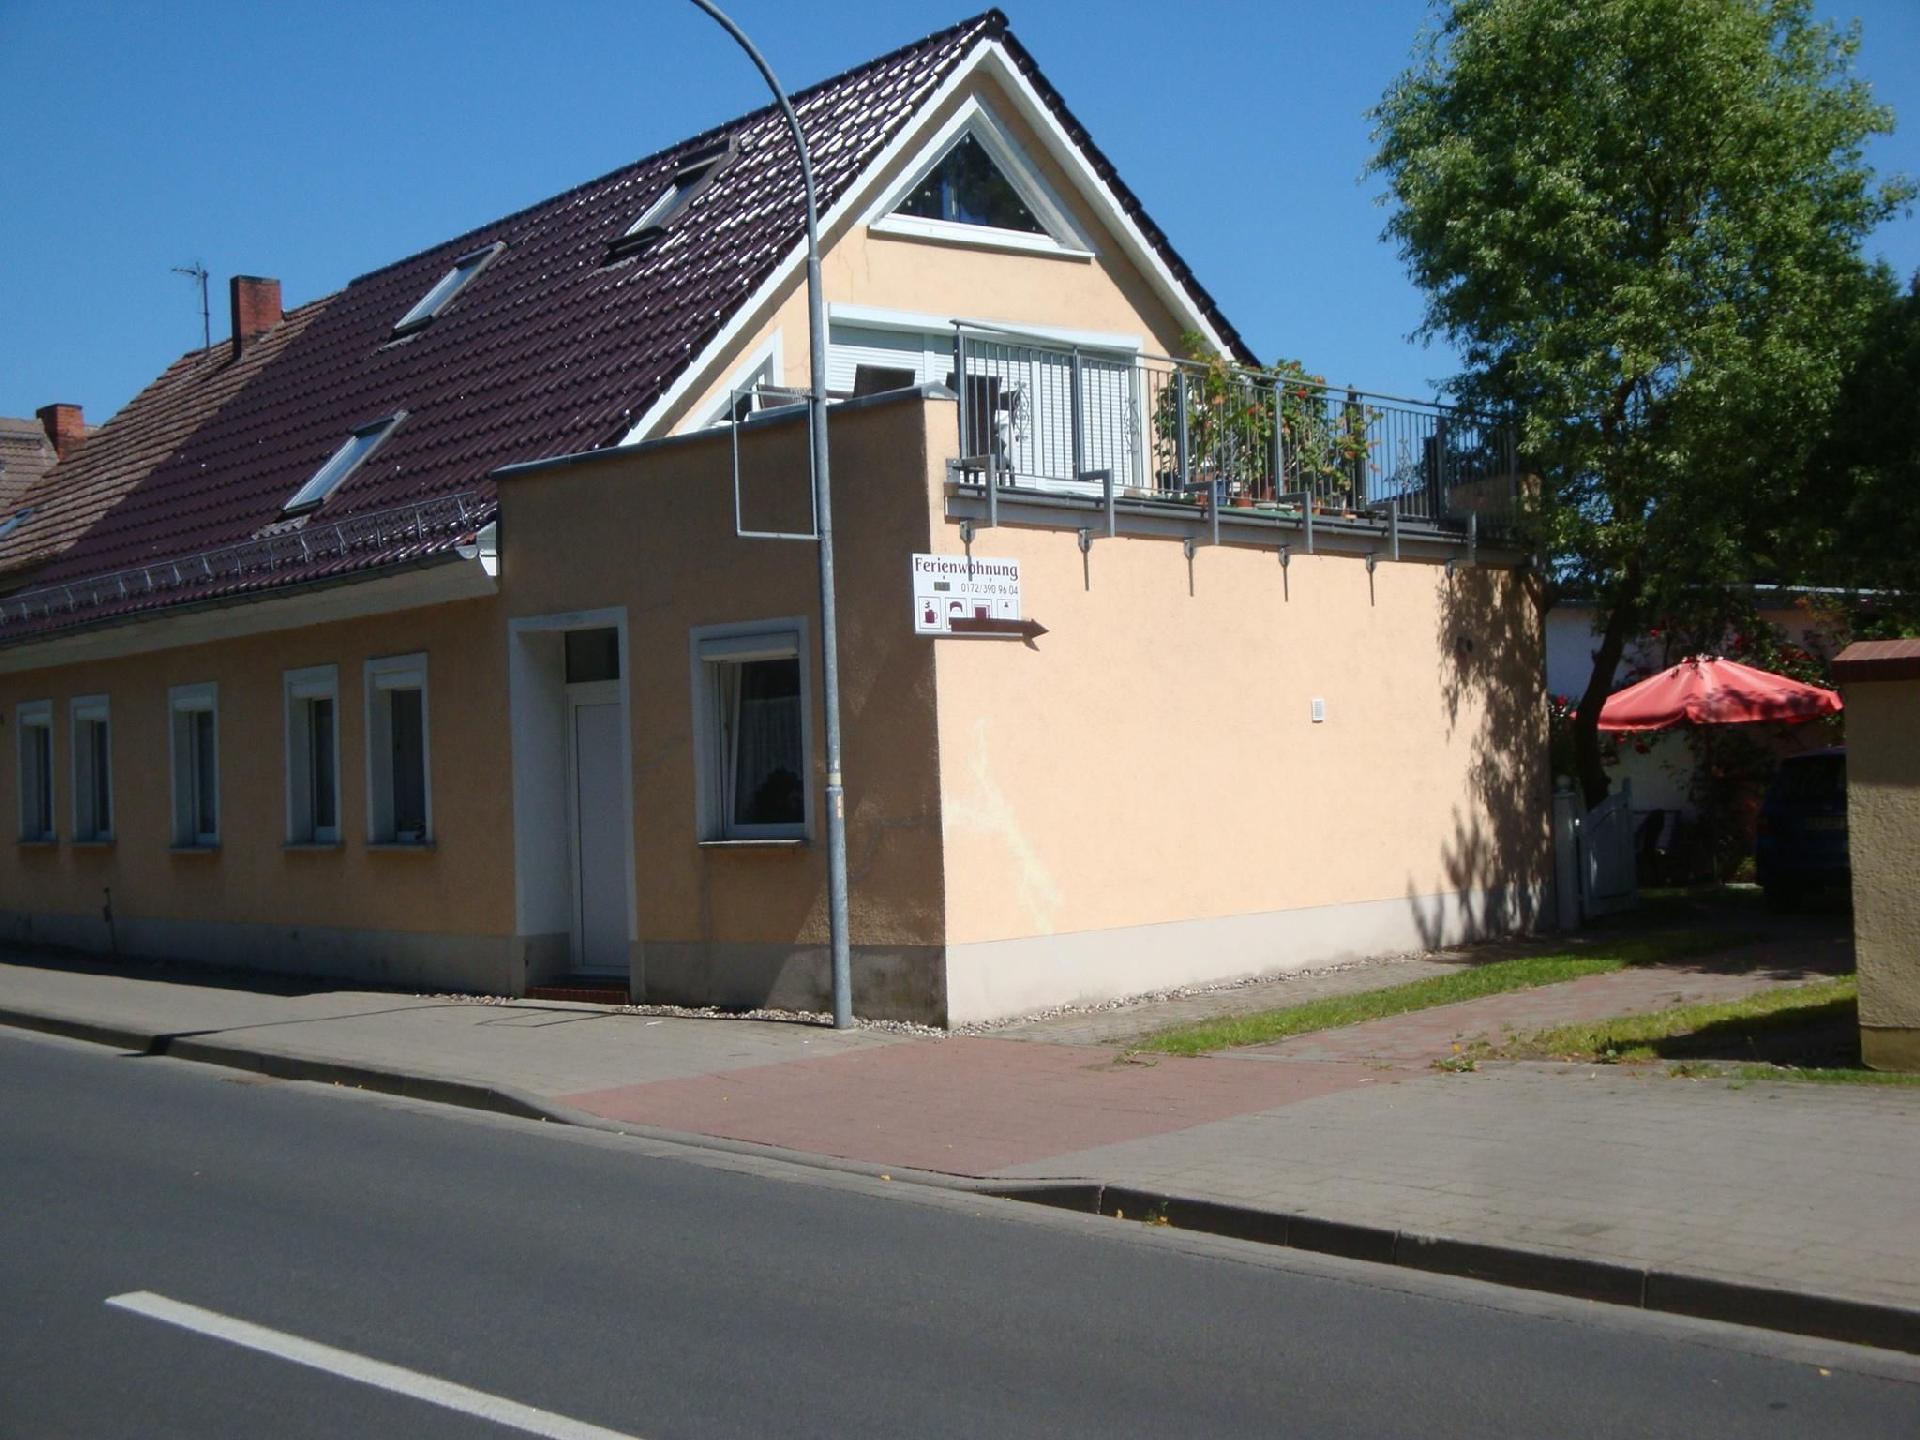 Appartement in Ueckermünde mit Grill Ferienhaus in Mecklenburg Vorpommern